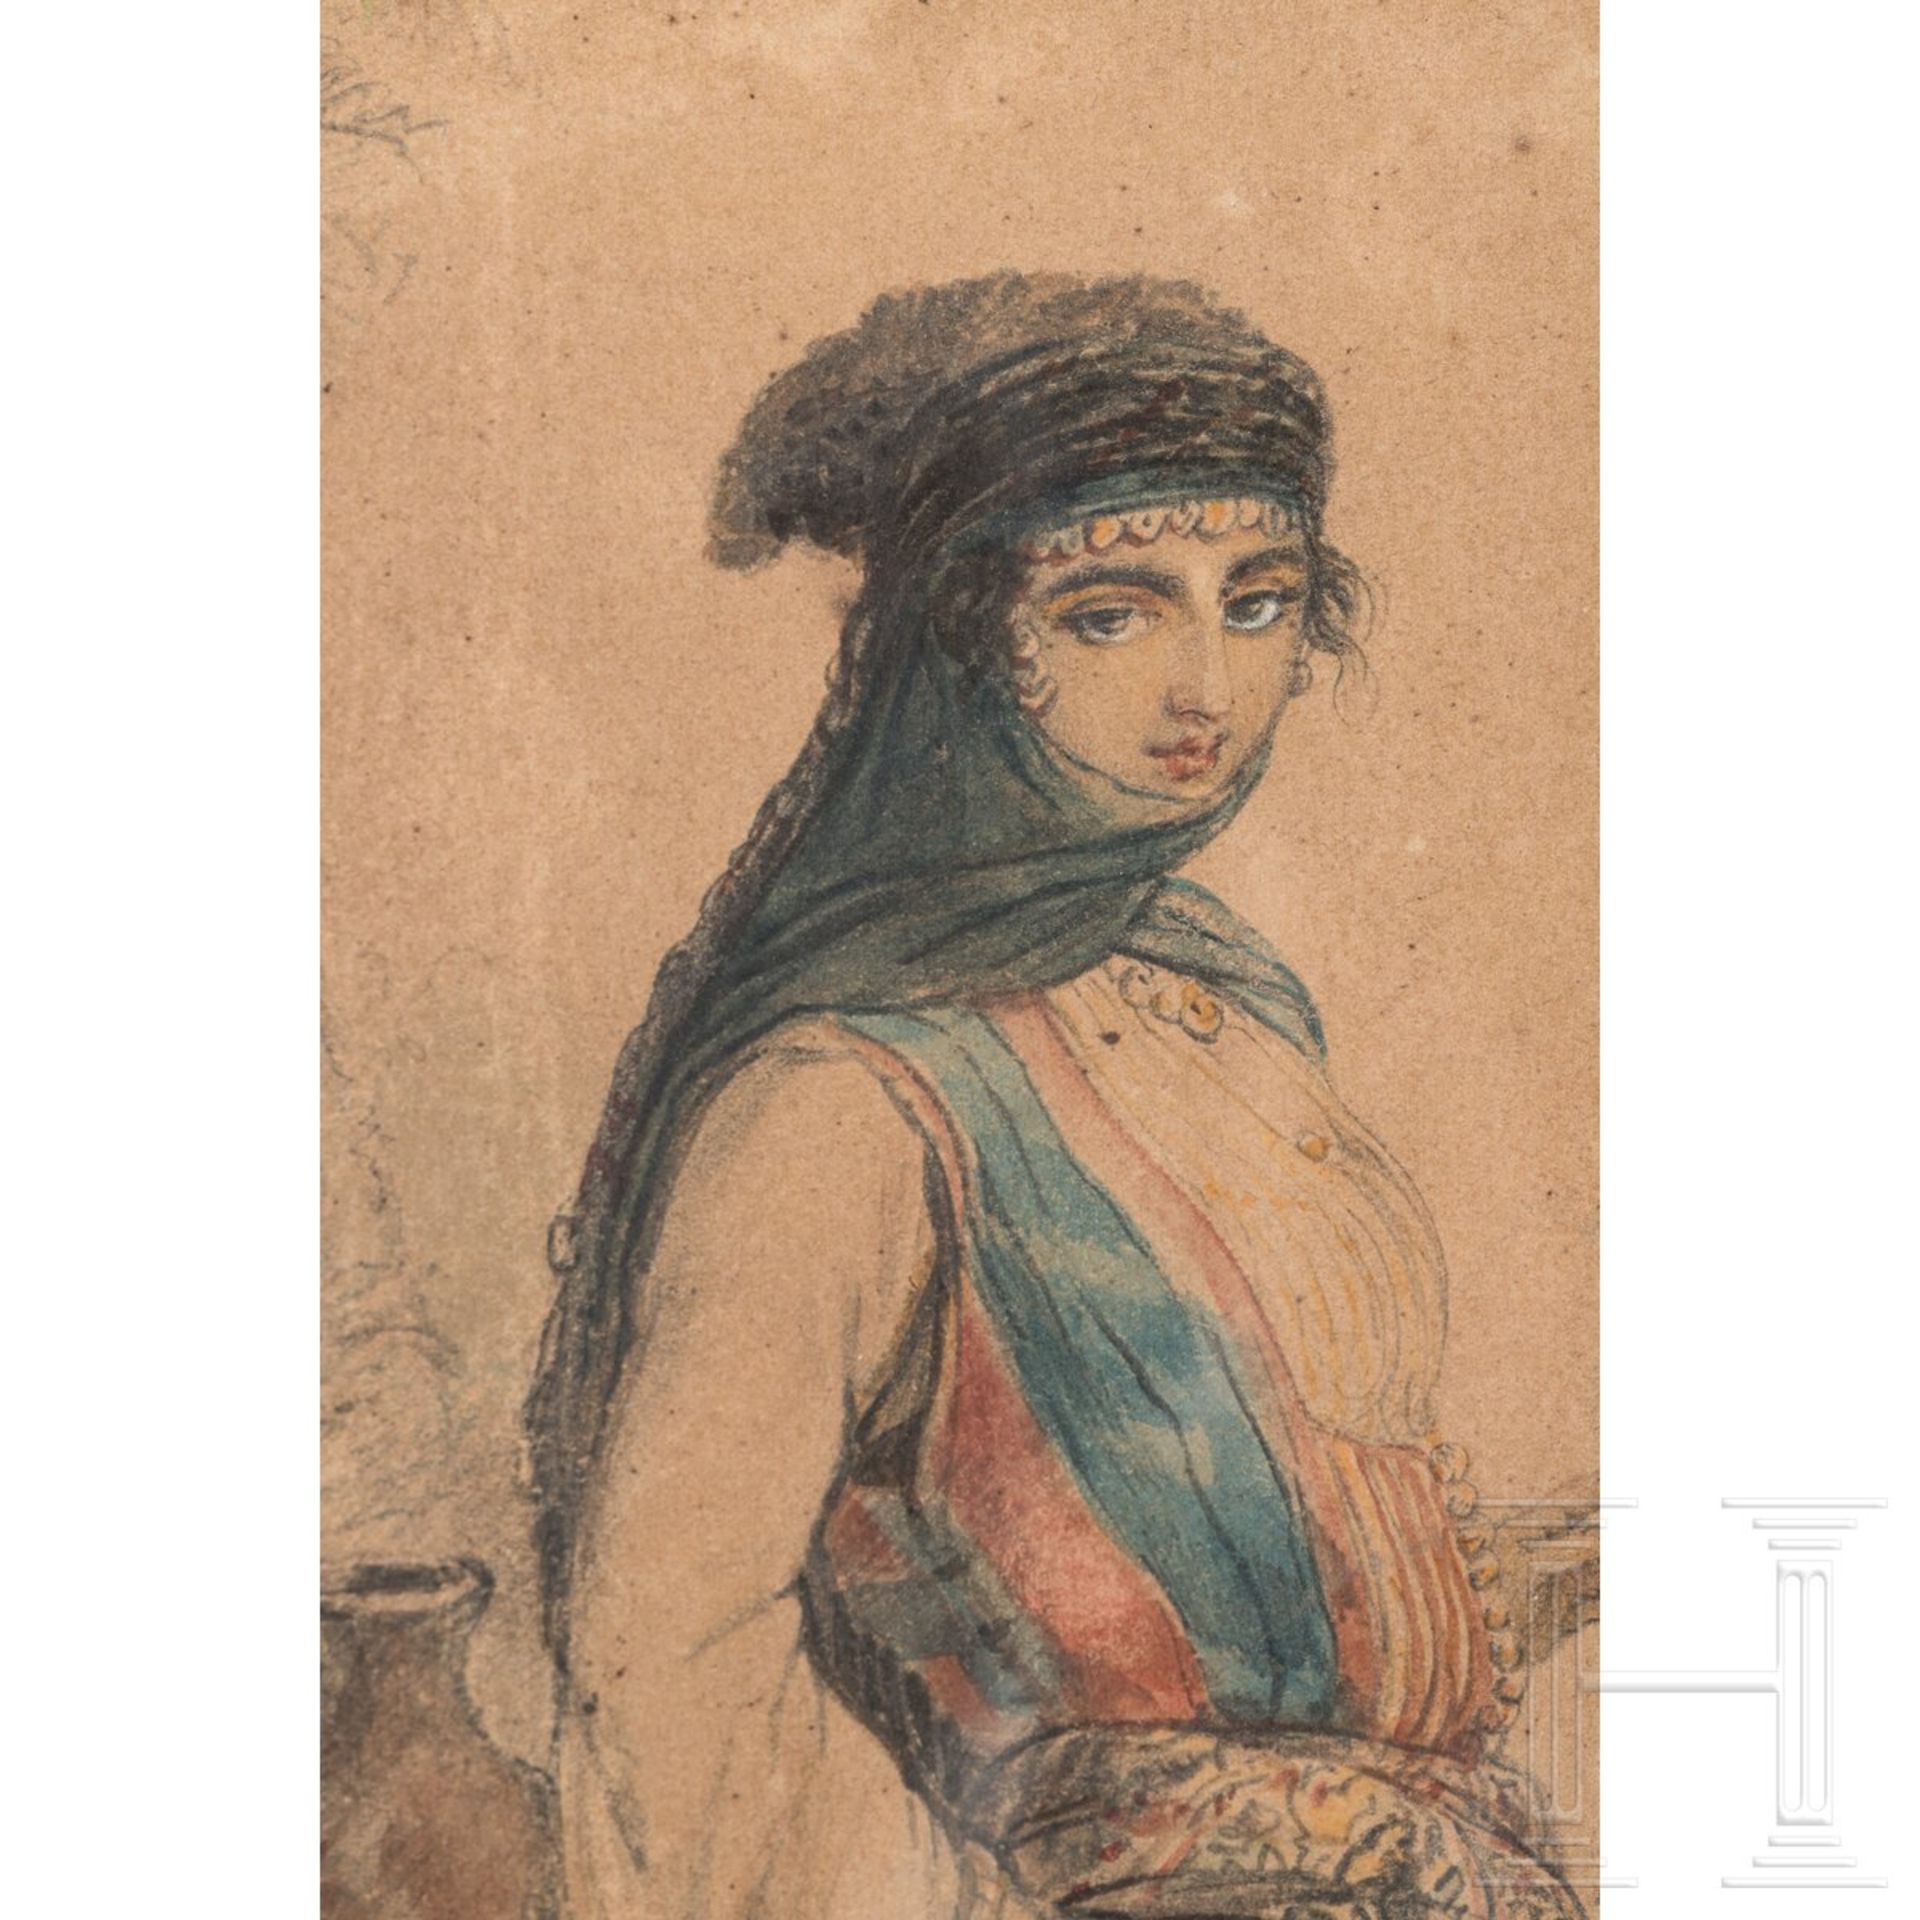 Eugène Romain van Maldeghem, "Femme druse" (Drusisches Mädchen), Niederlande, datiert 1843 - Bild 5 aus 7